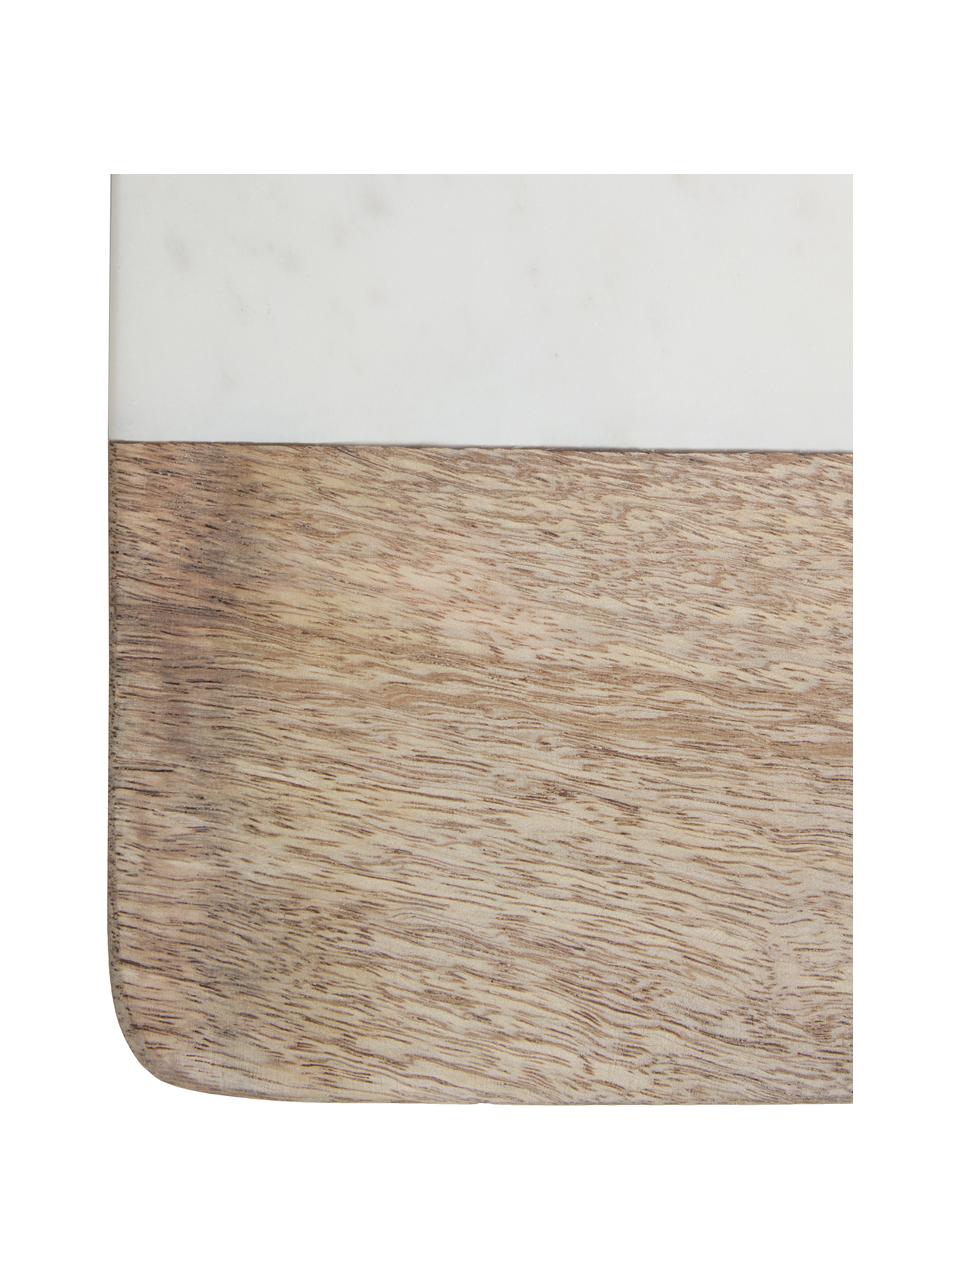 Mramorová doska na krájanie Danelle, D 30 x Š 20 cm, Mangové drevo, biela, mramorovaná